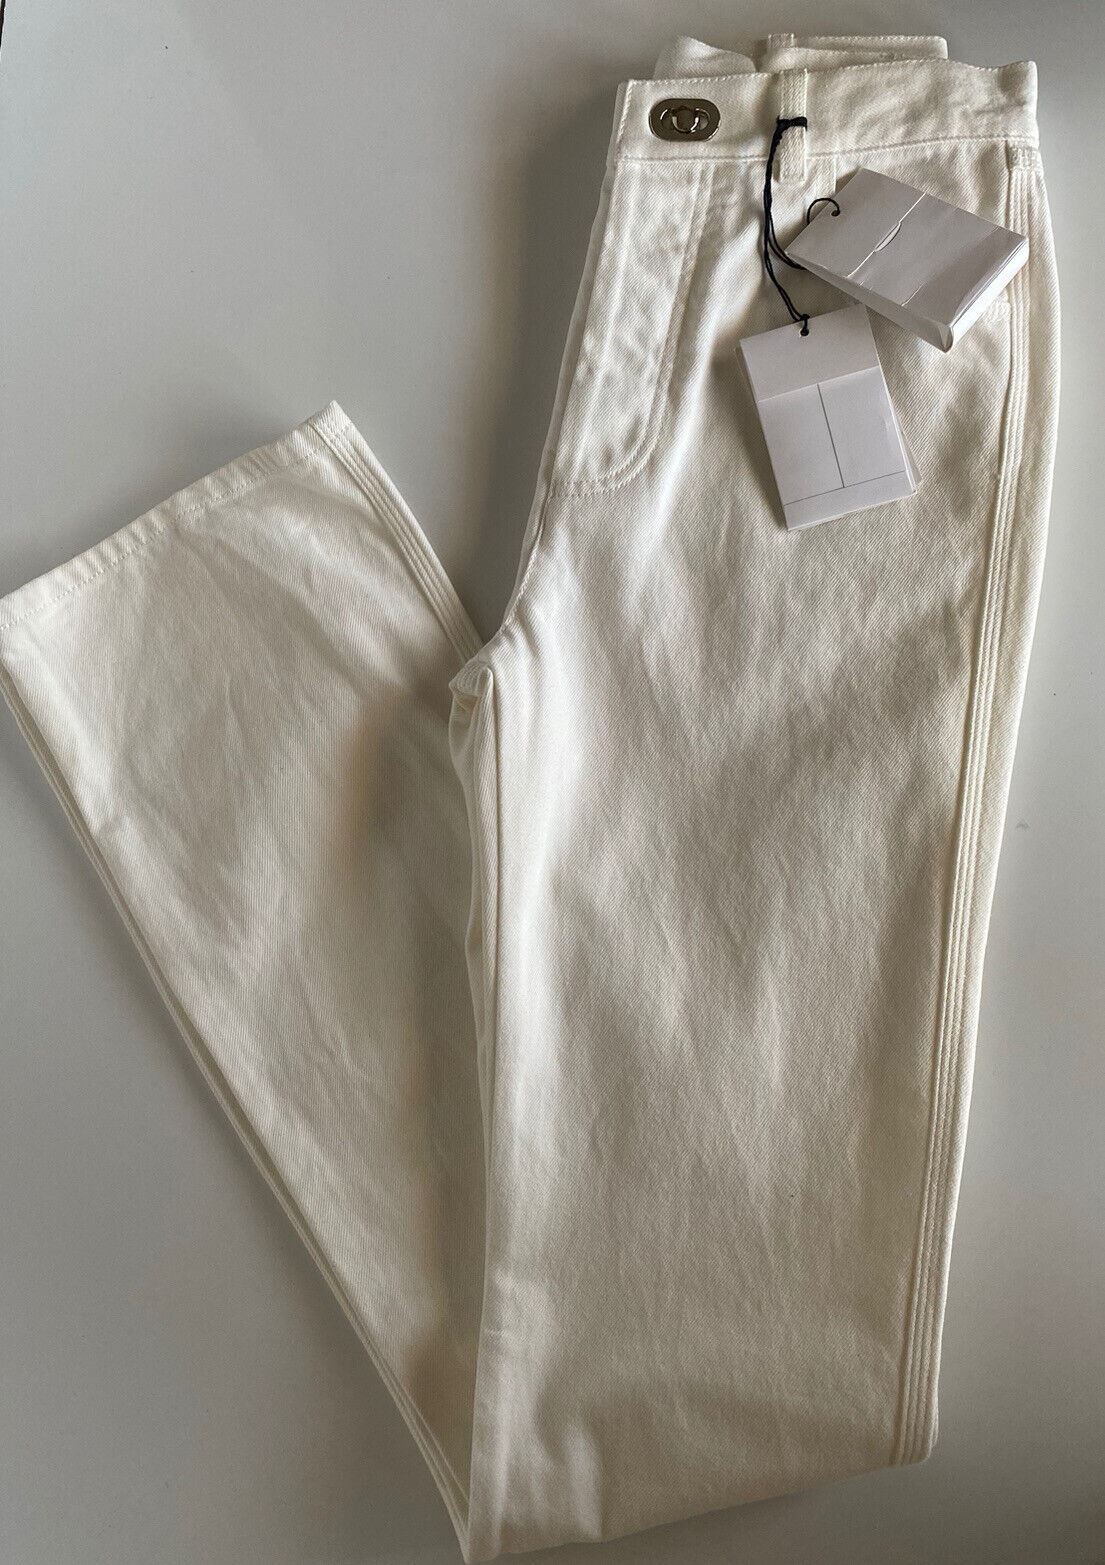 Neu mit Etikett: 950 $ Bottega Veneta High-Waist-Jeans Weiß 2 US (38 Euro) 630693 Italien